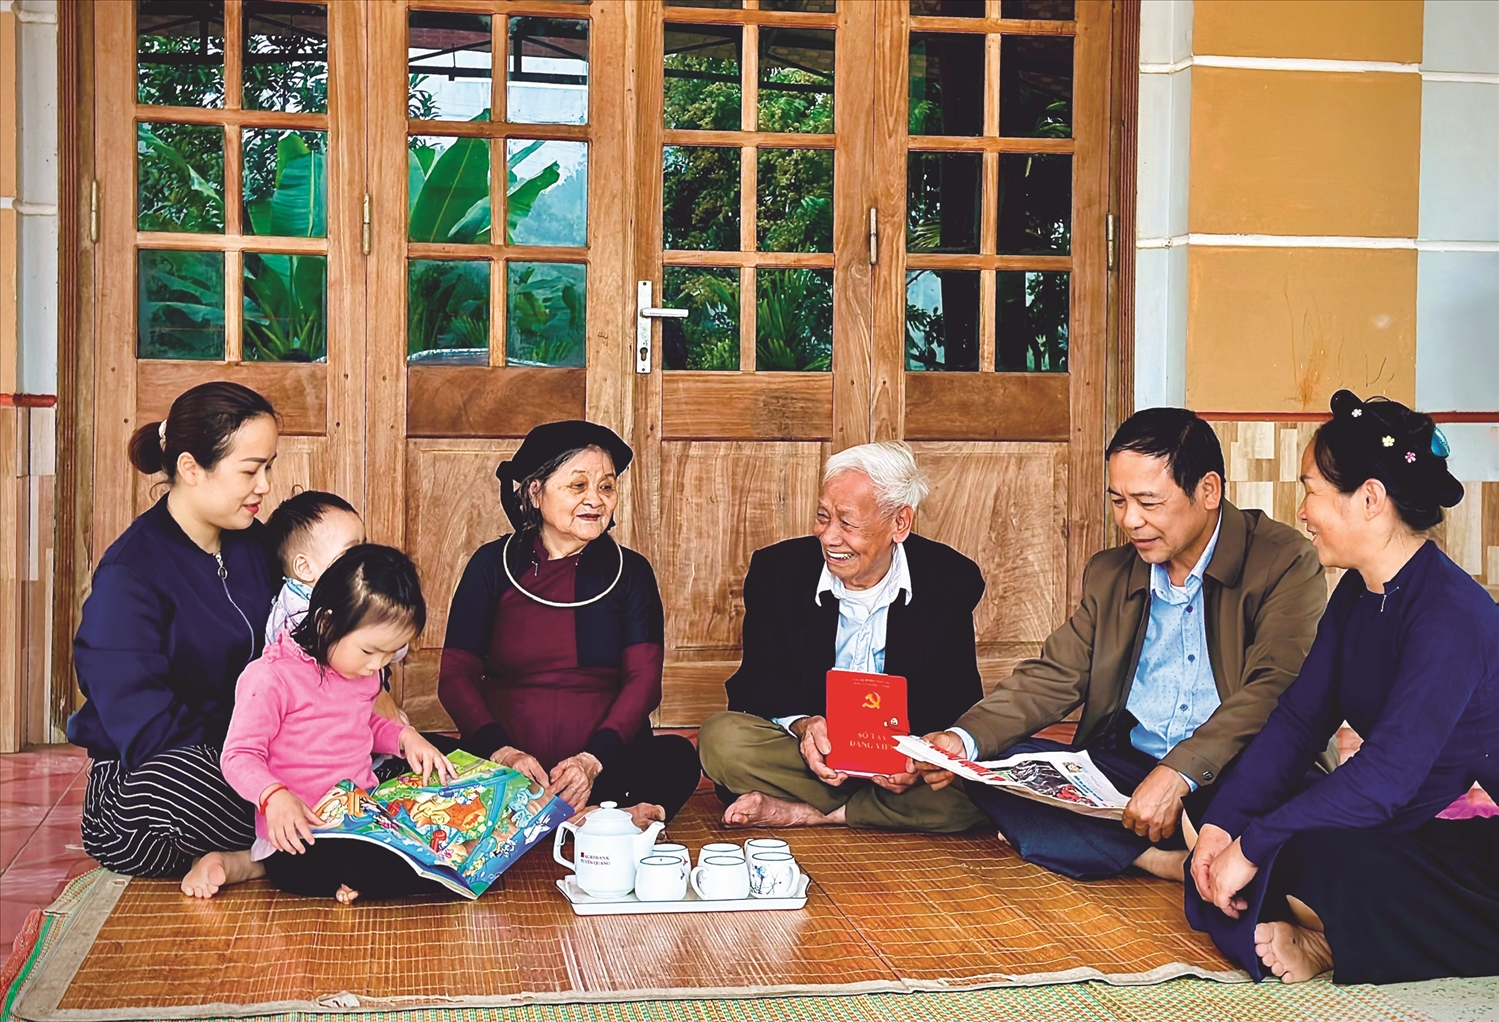 Hai vợ chồng đảng viên Mã Văn Thịnh và Nông Thị Vinh cùng các con cháu tìm hiểu thông tin thời sự, chính trị - xã hội.